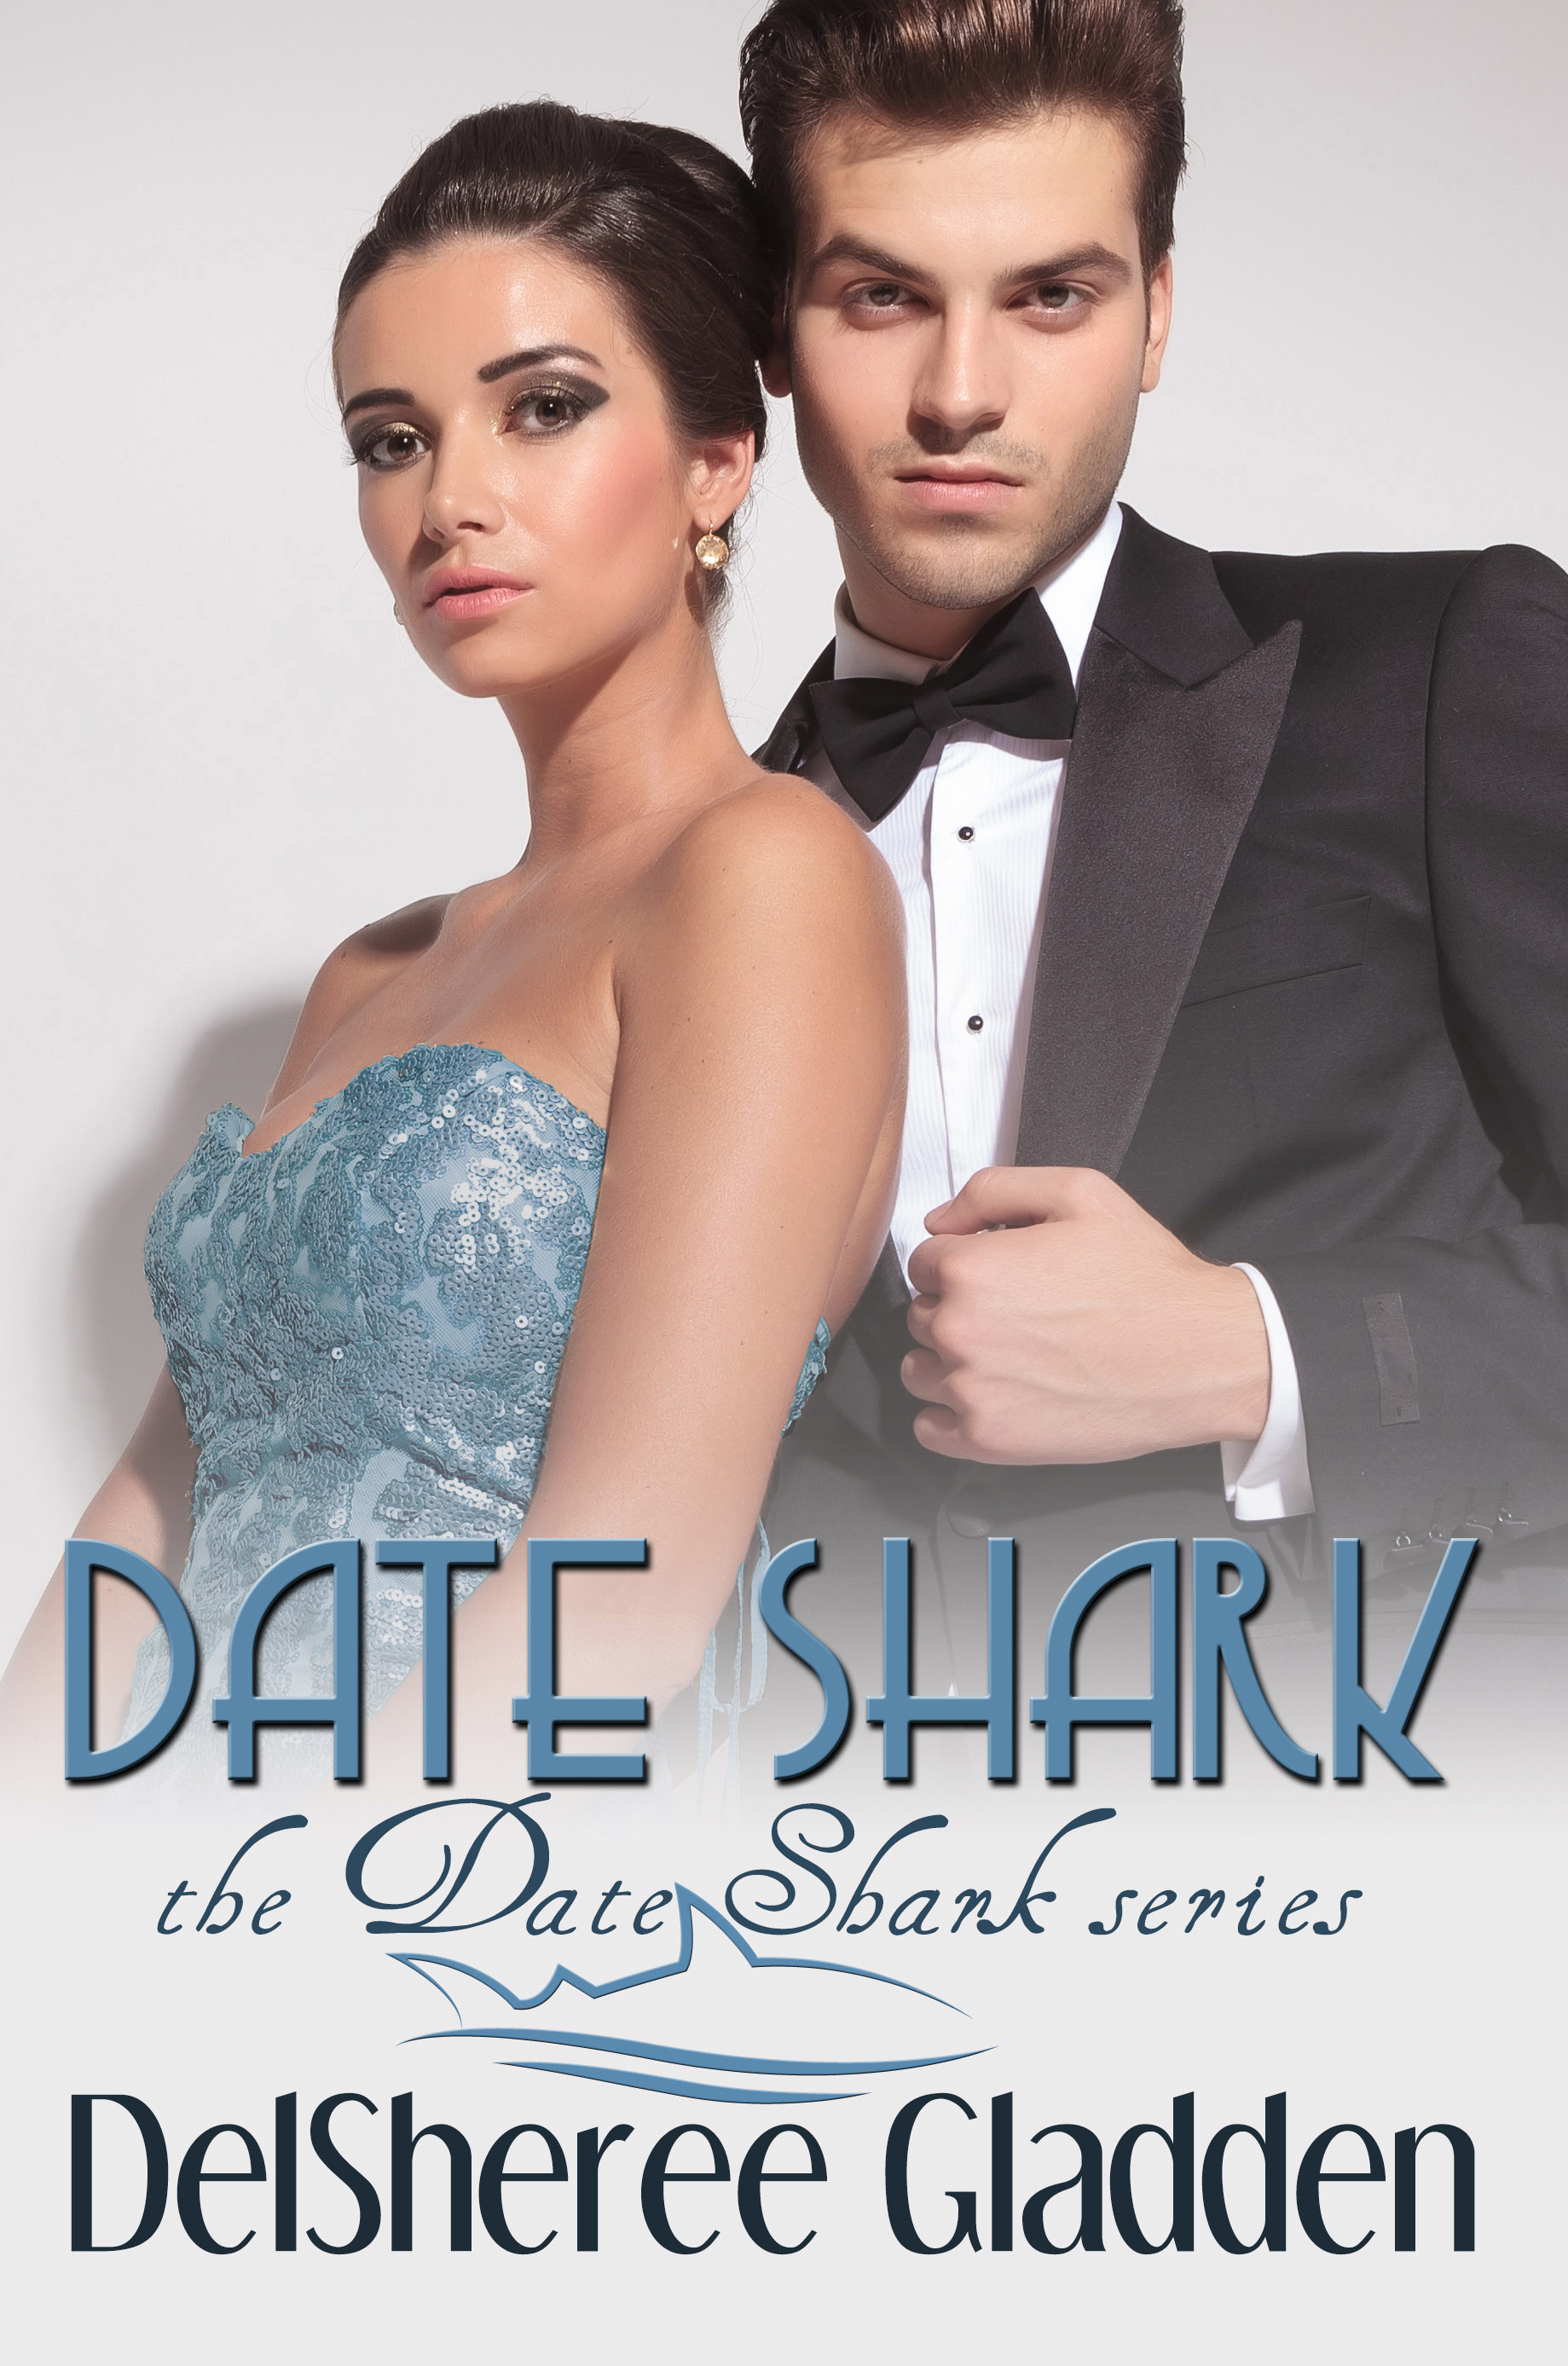 Date Shark